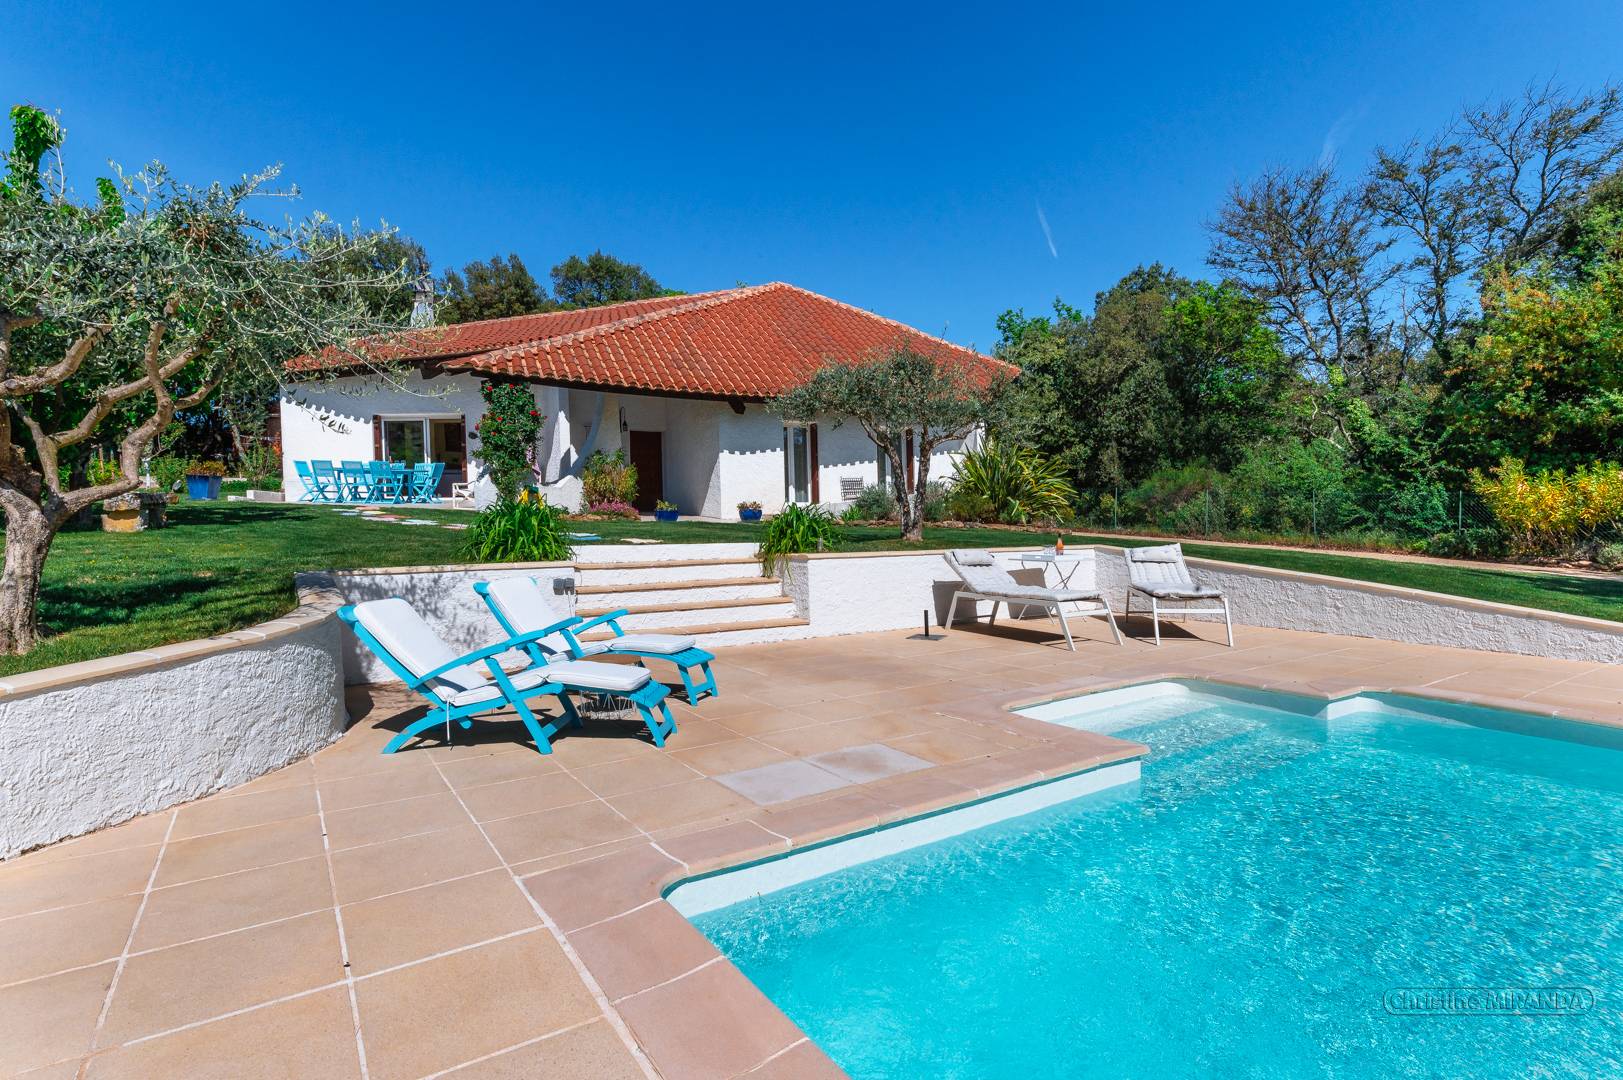 Maison de vacances en Drôme Provençale, piscine chauffée et terrain de pétanque